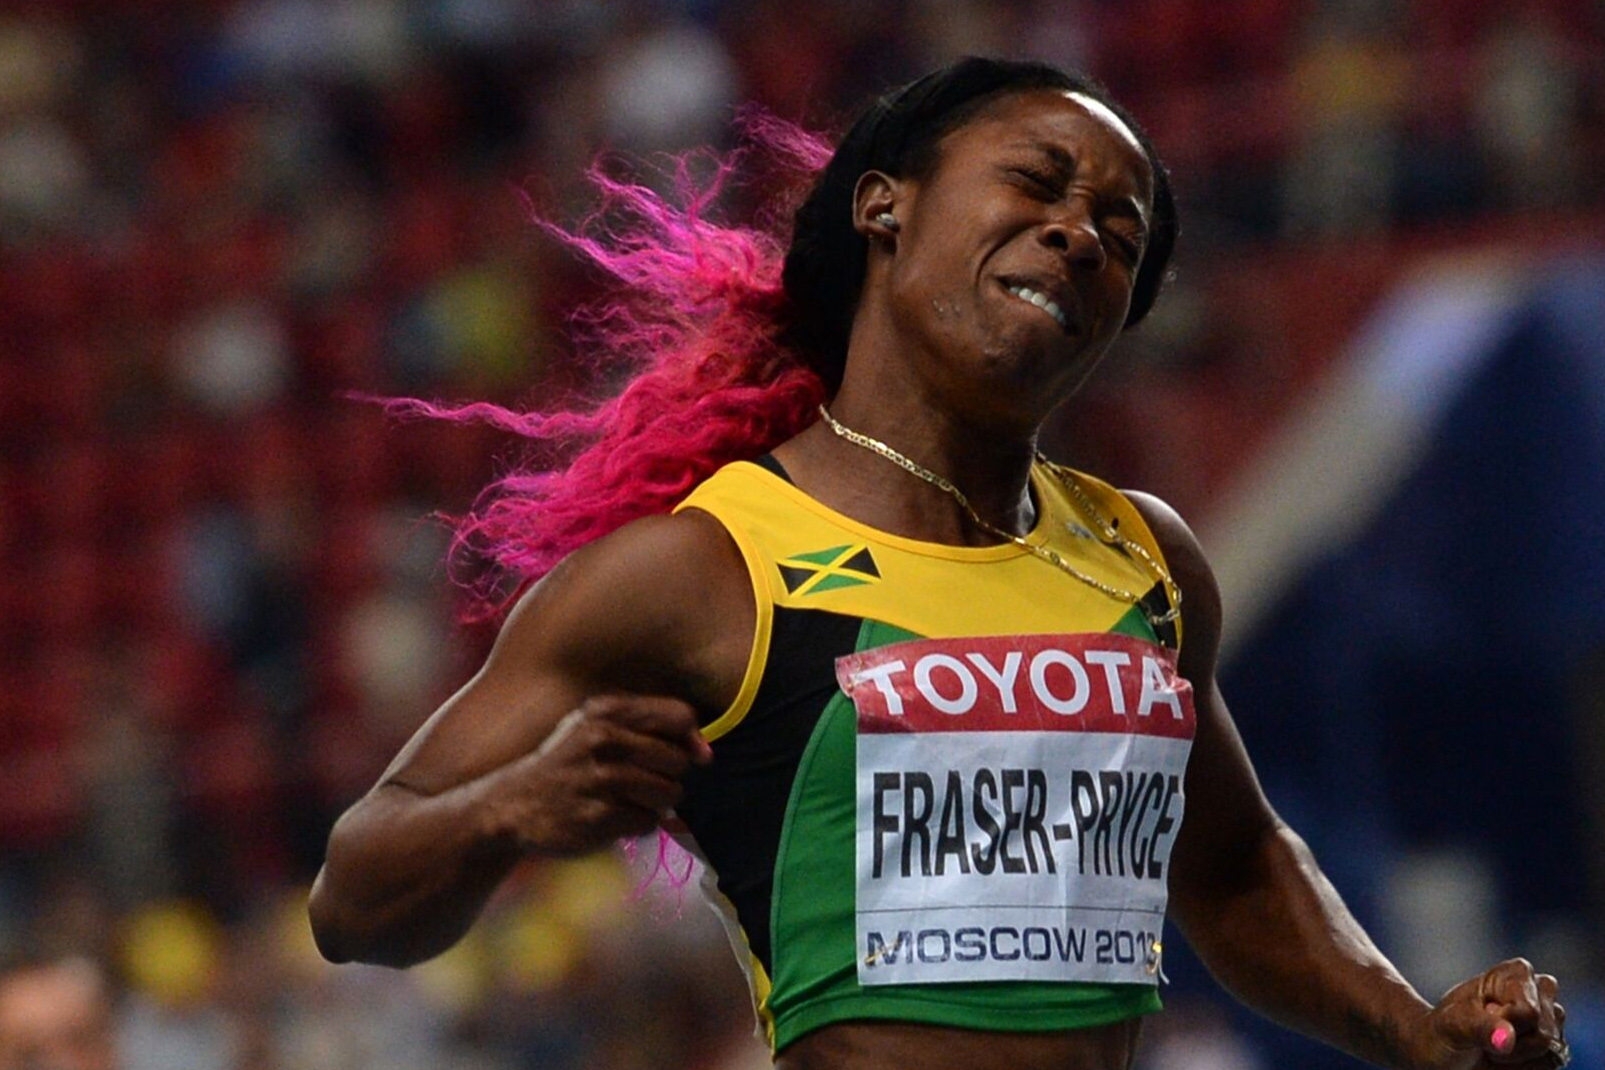 Ямайская бегунья отказалась от участия в забеге на 100 метров на Играх после недопуска на стадион